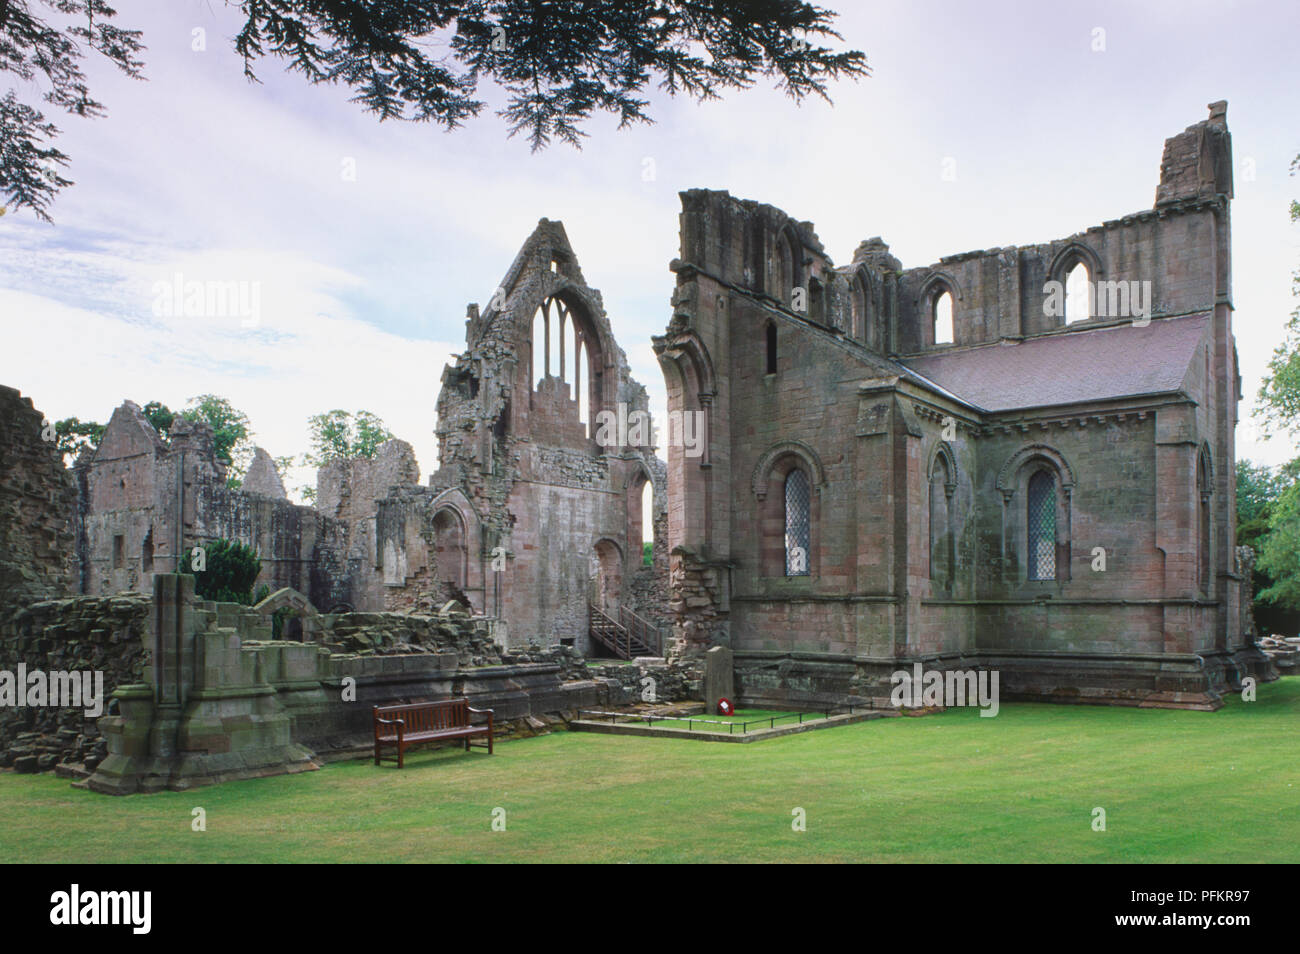 Gran Bretaña, Escocia, Dryburgh Abbey, una ruina monástico, situado a orillas del río Tweed, Sir Walter Scott está enterrado en los terrenos. Foto de stock